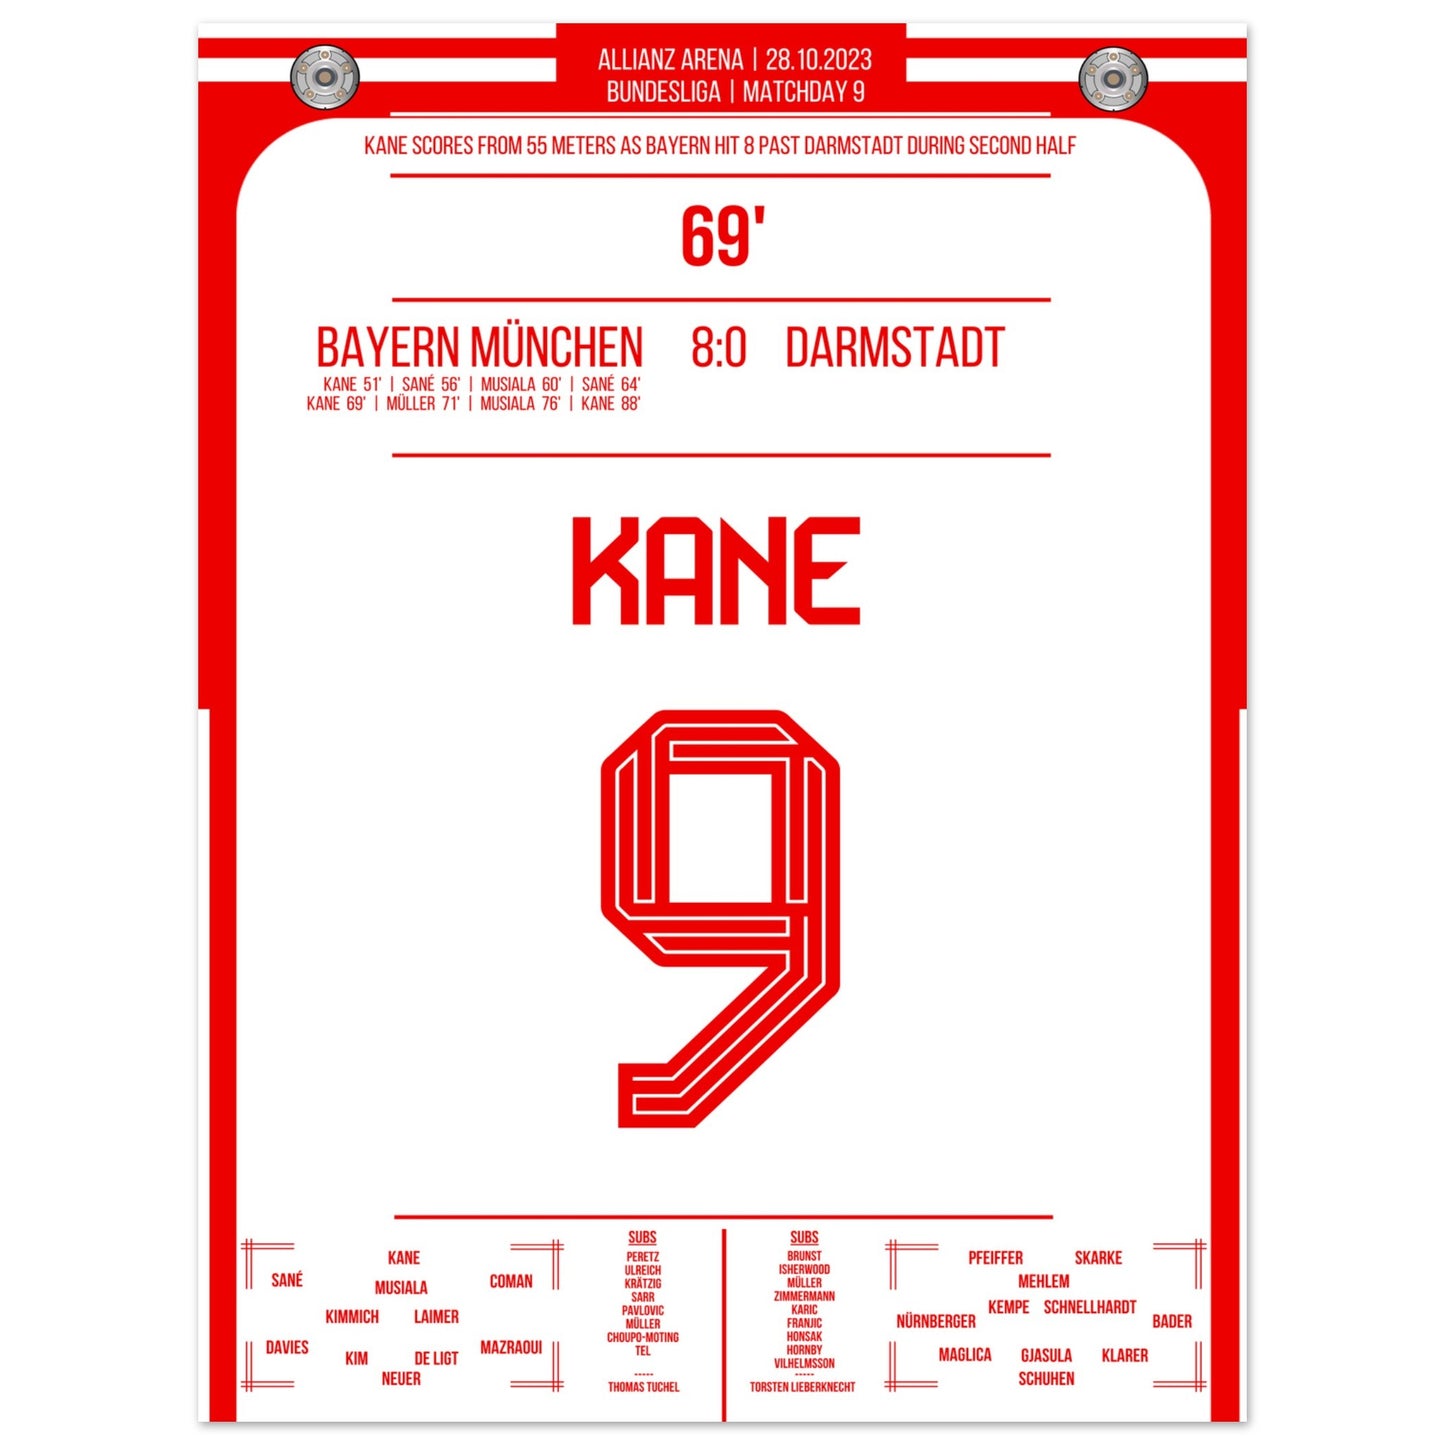 Kane's Traumtor aus 55 Metern bei 8-0 Sieg gegen Darmstadt 30x40-cm-12x16-Ohne-Rahmen